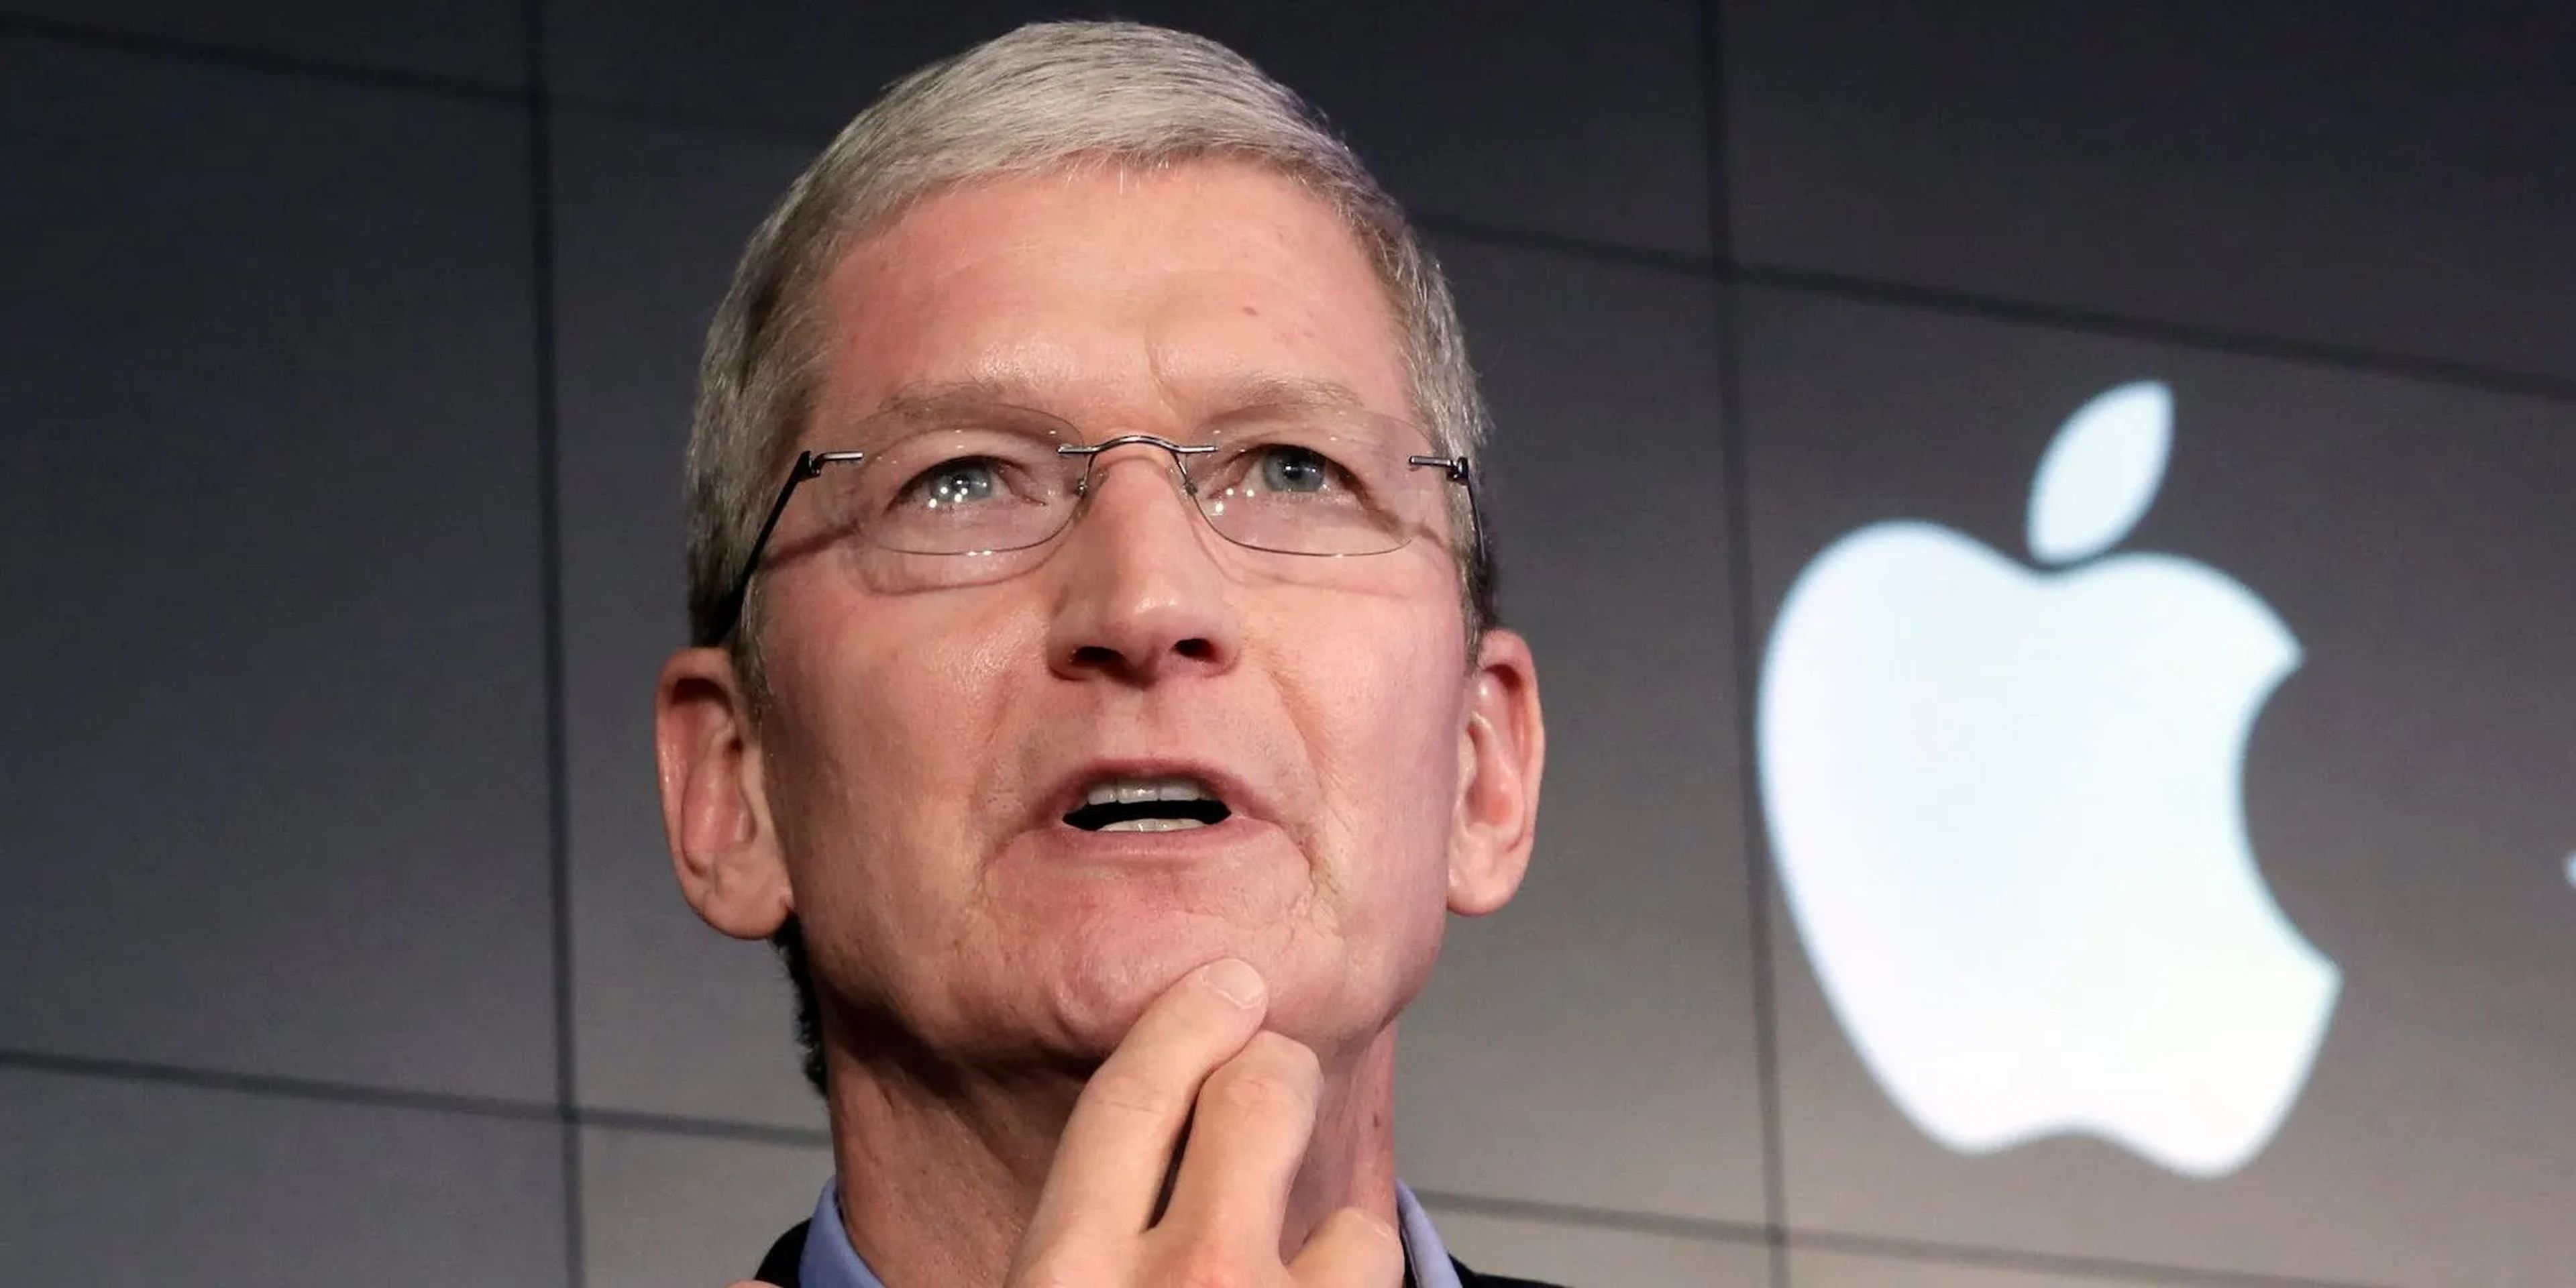 El CEO de Apple, Tim Cook, ha dado marcha atrás en dos grandes proyectos, lo que ha provocado recortes de plantilla.